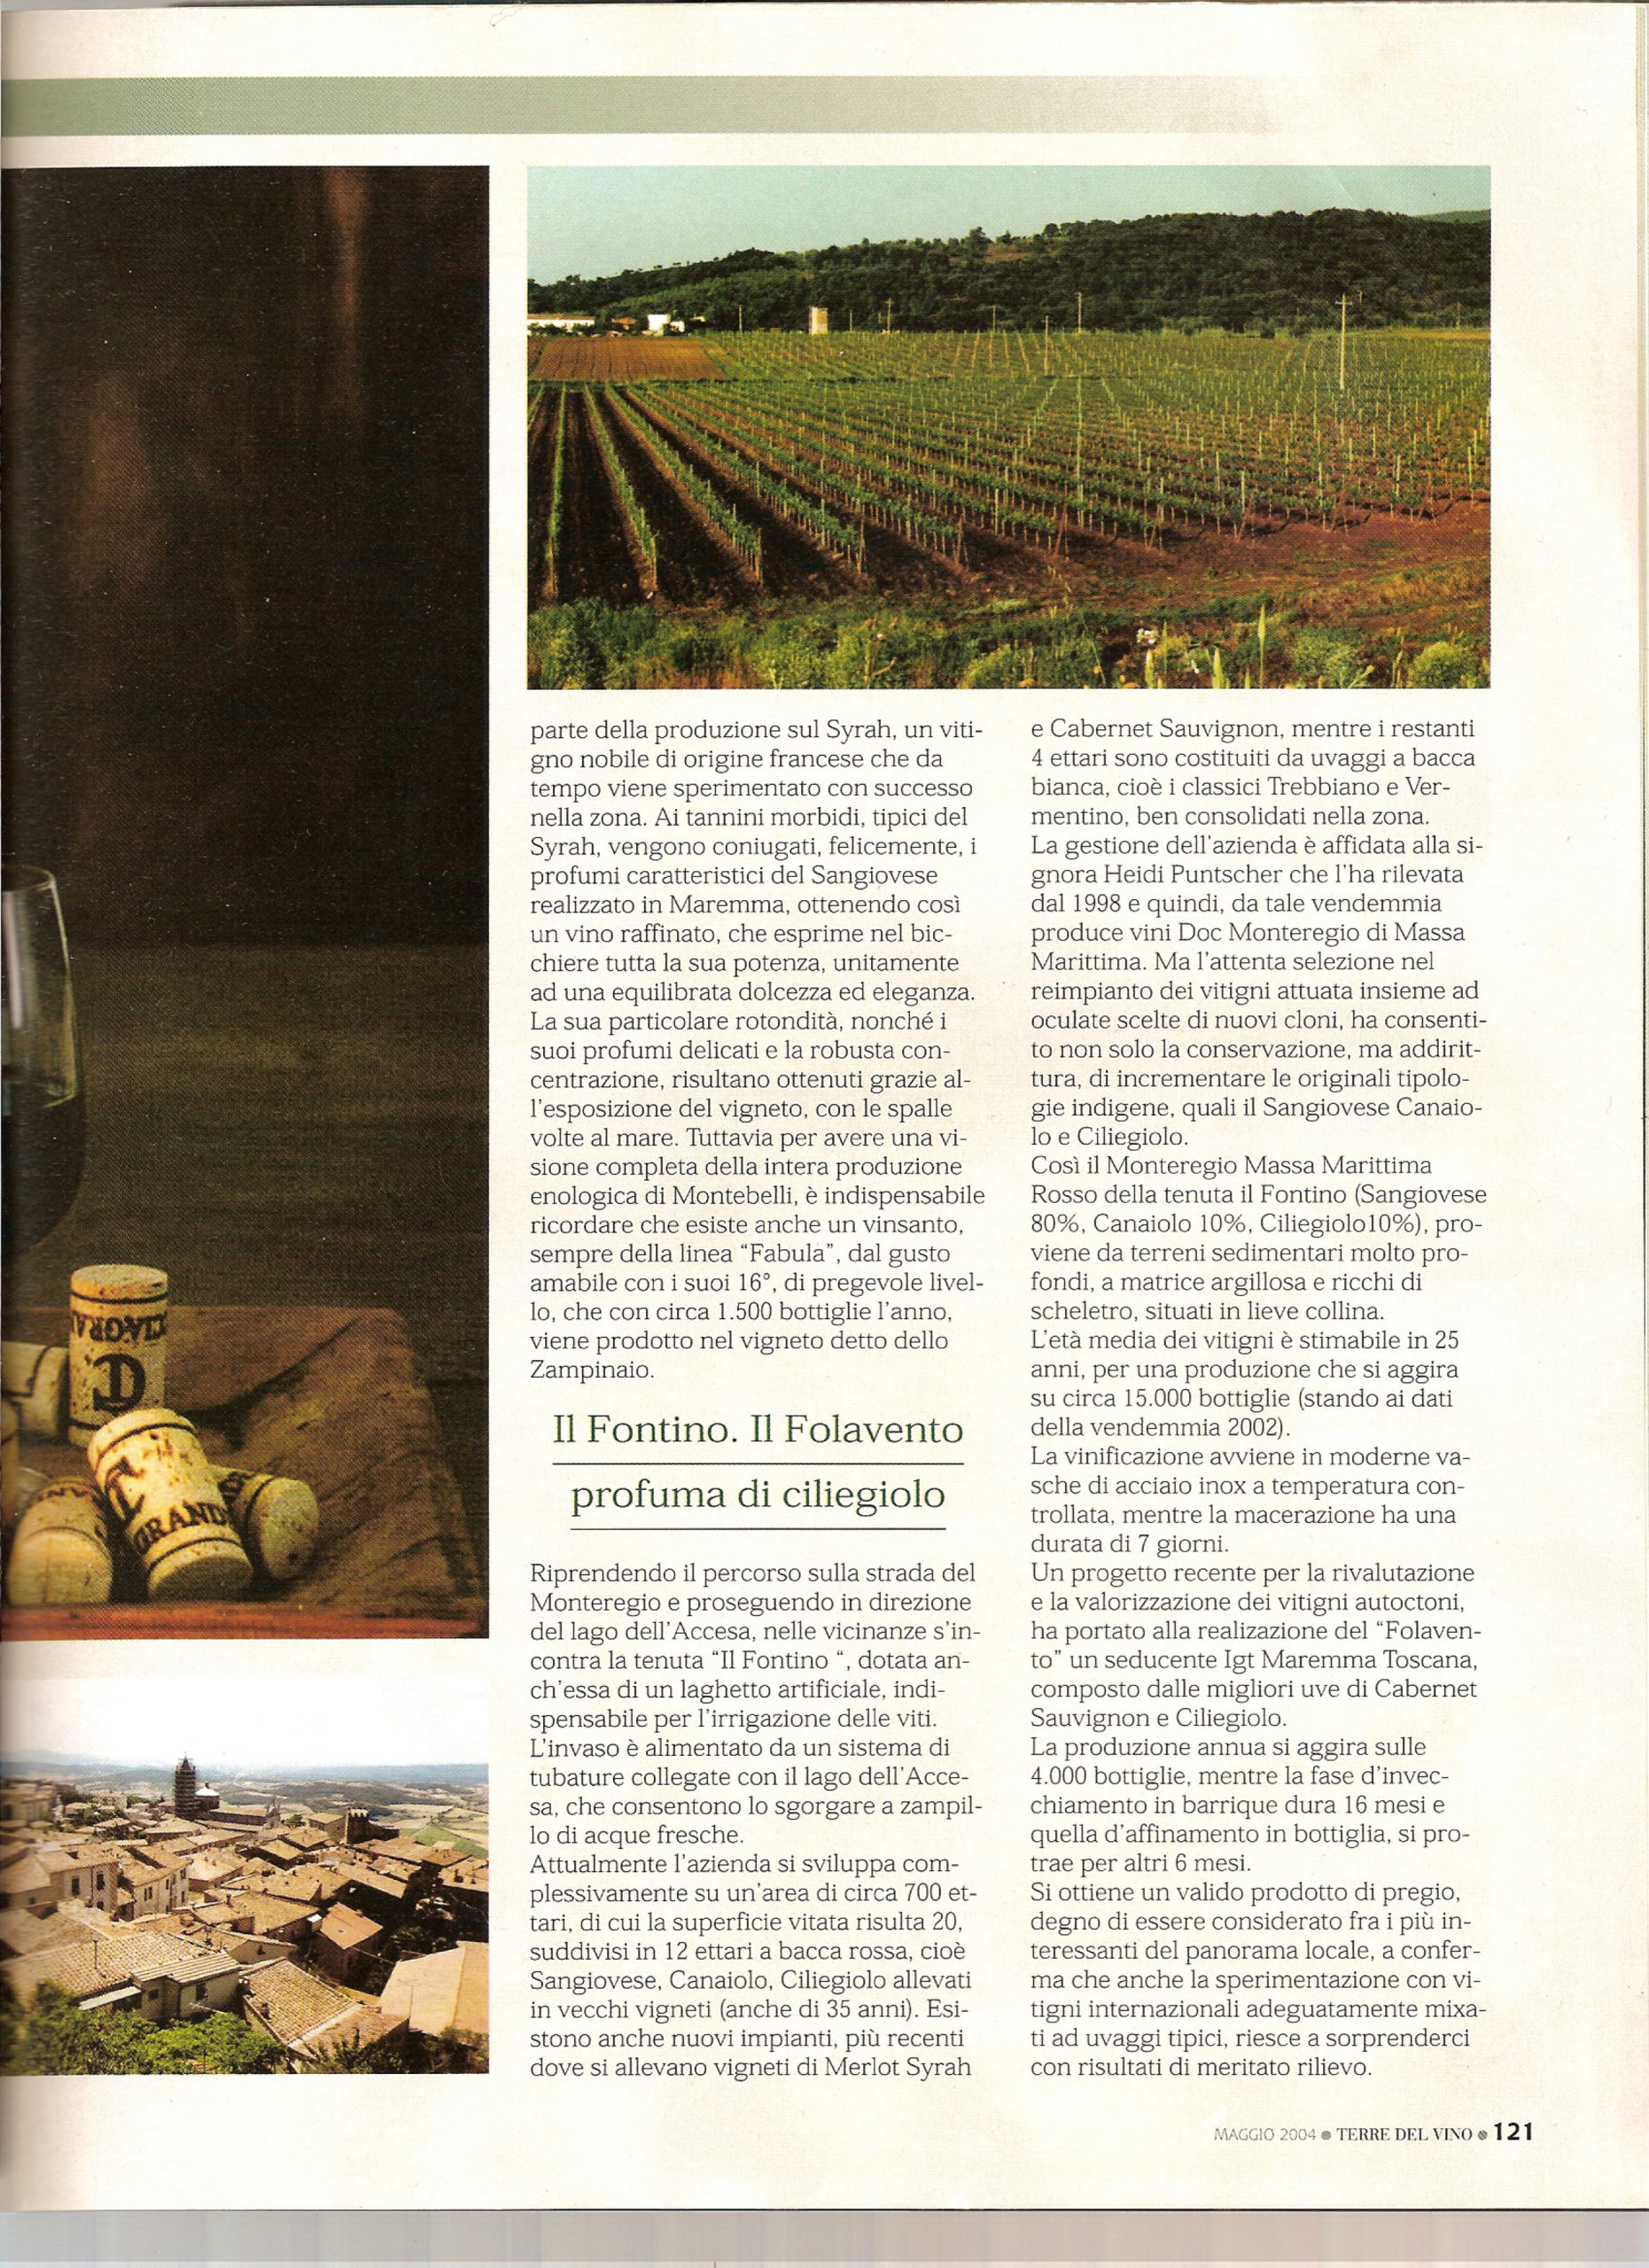 Terre del Vino 2004 - Azienda Vinicola Toscana Cacciagrande - Segnalazioni per gli enonauti che dalla costa maremmana vogliano spingersi verso l'interno alla ricerca di vini nuovi e particolari.